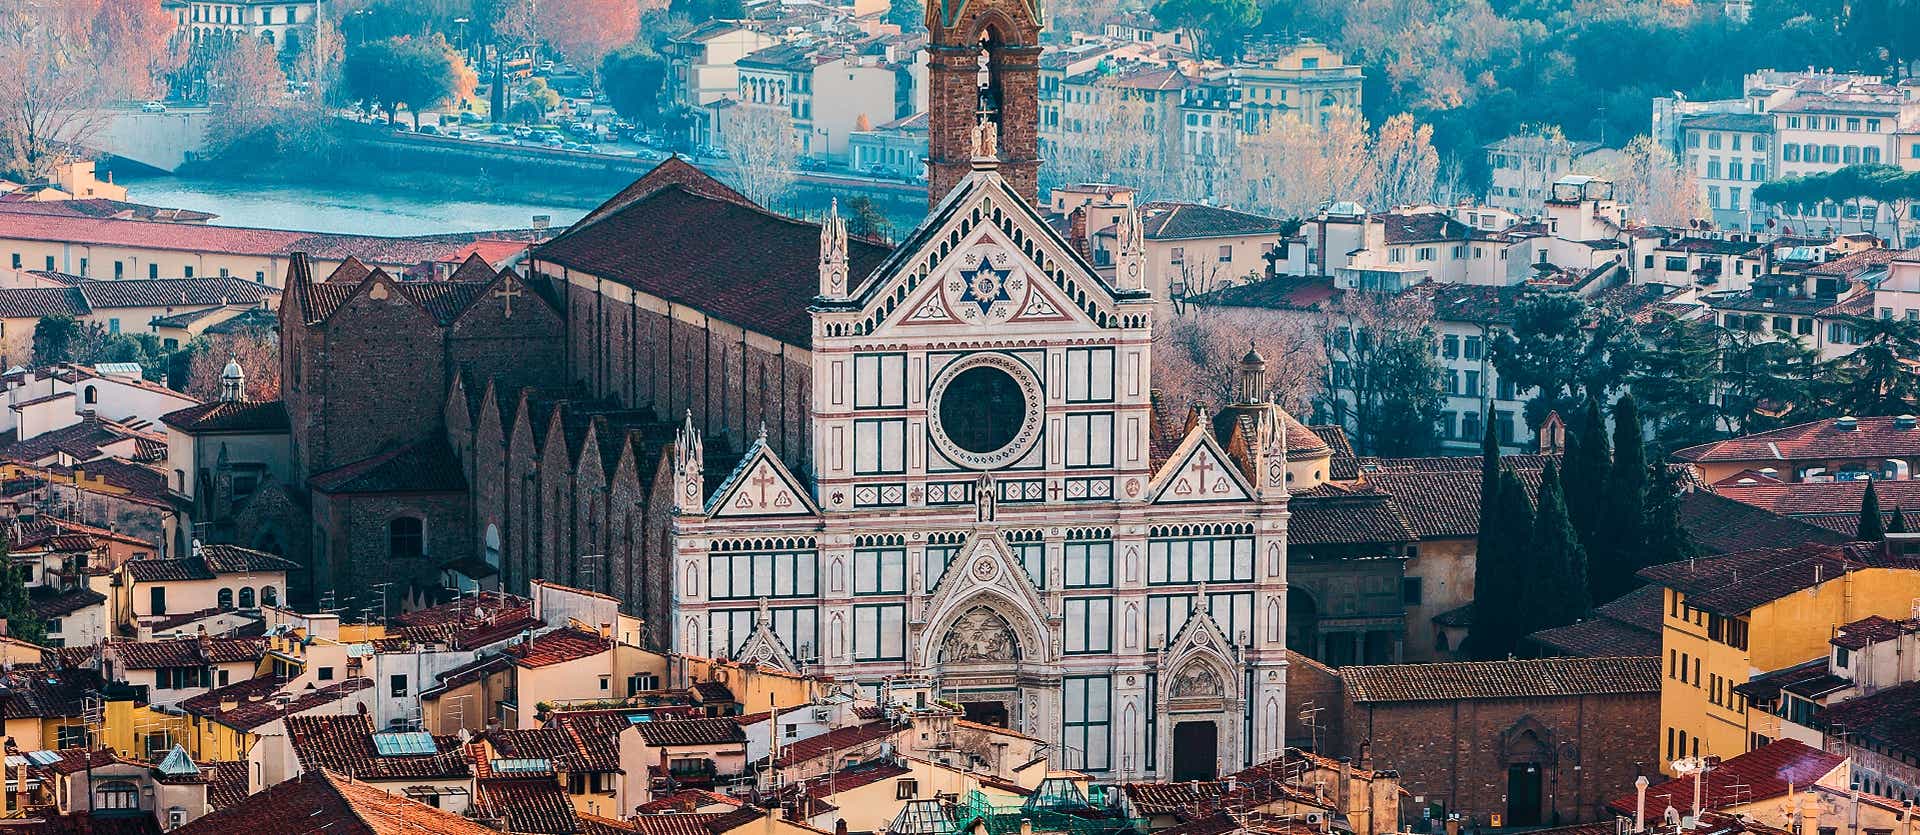 Santa Croce <span class="iconos separador"></span> Florence